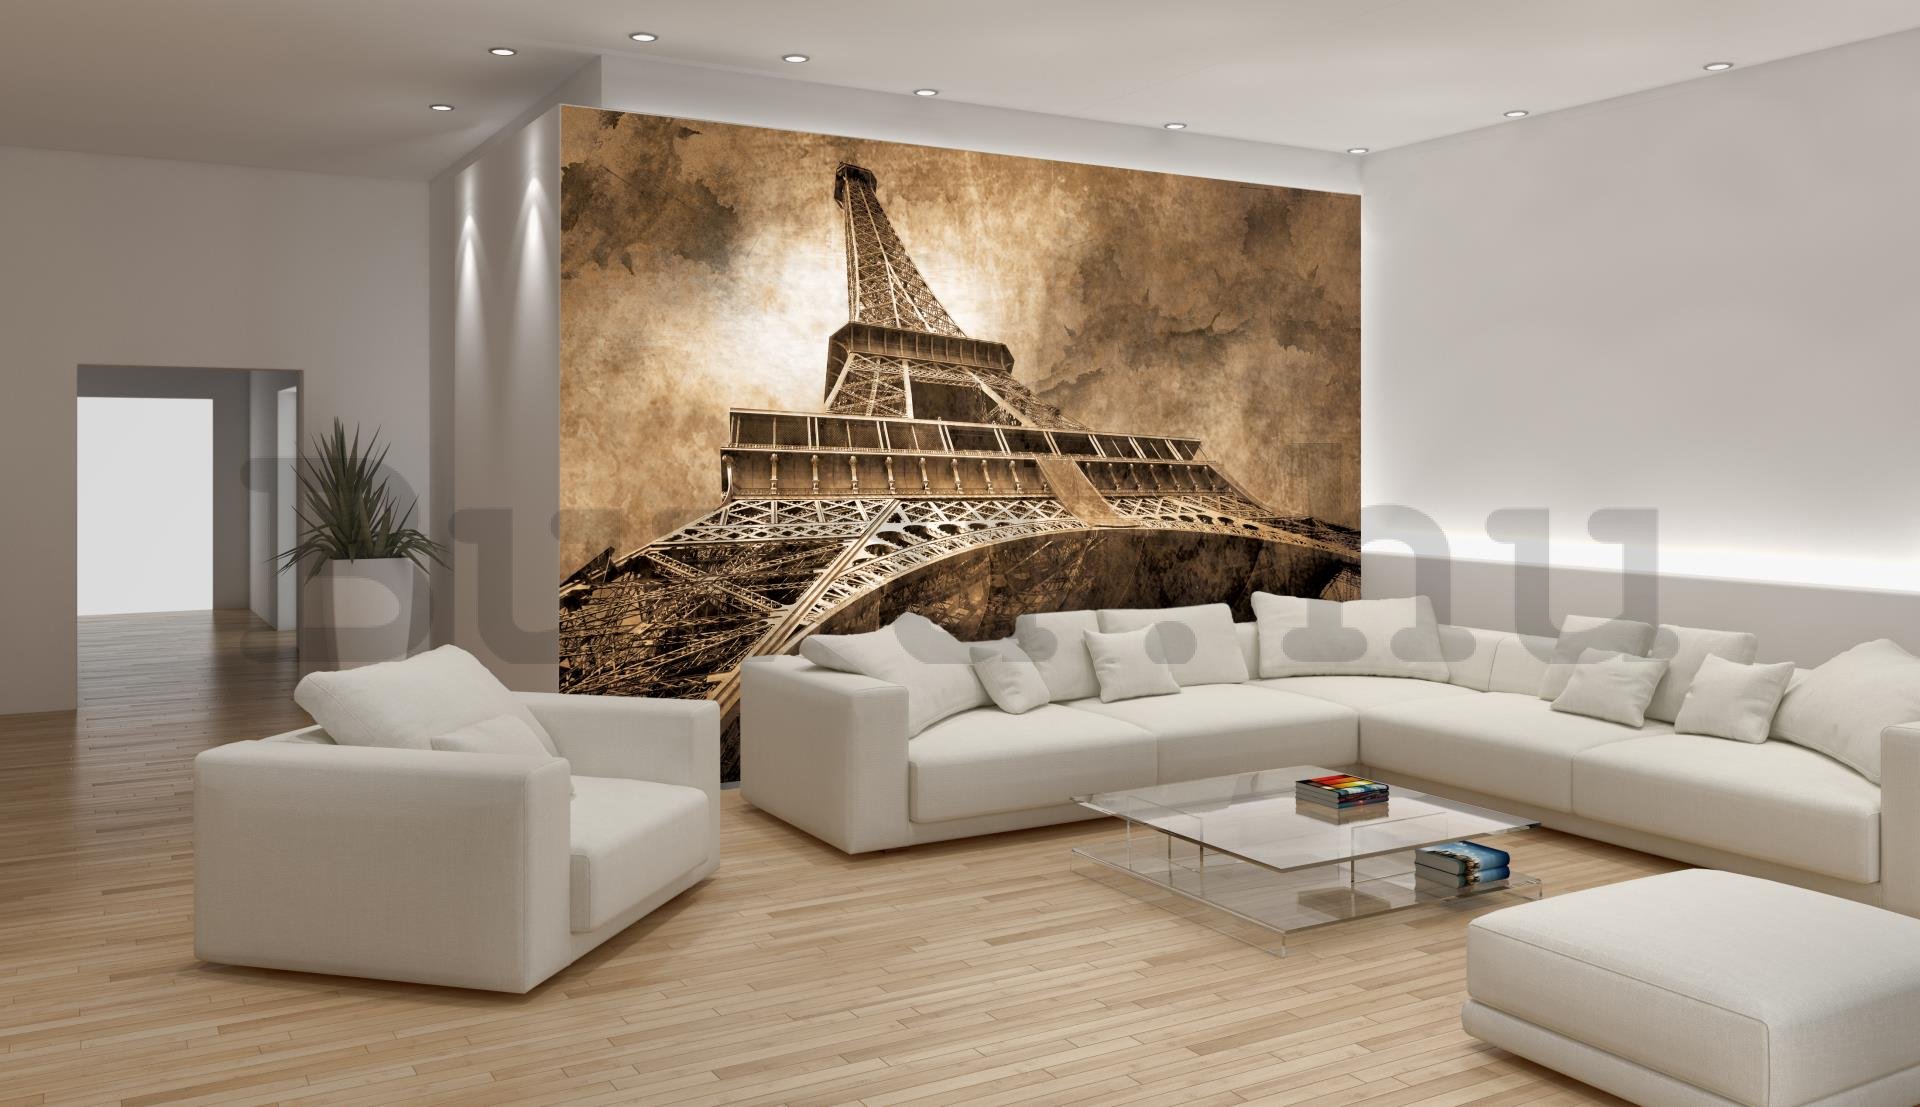 Fotótapéta: Eiffel-torony (3) - 184x254 cm